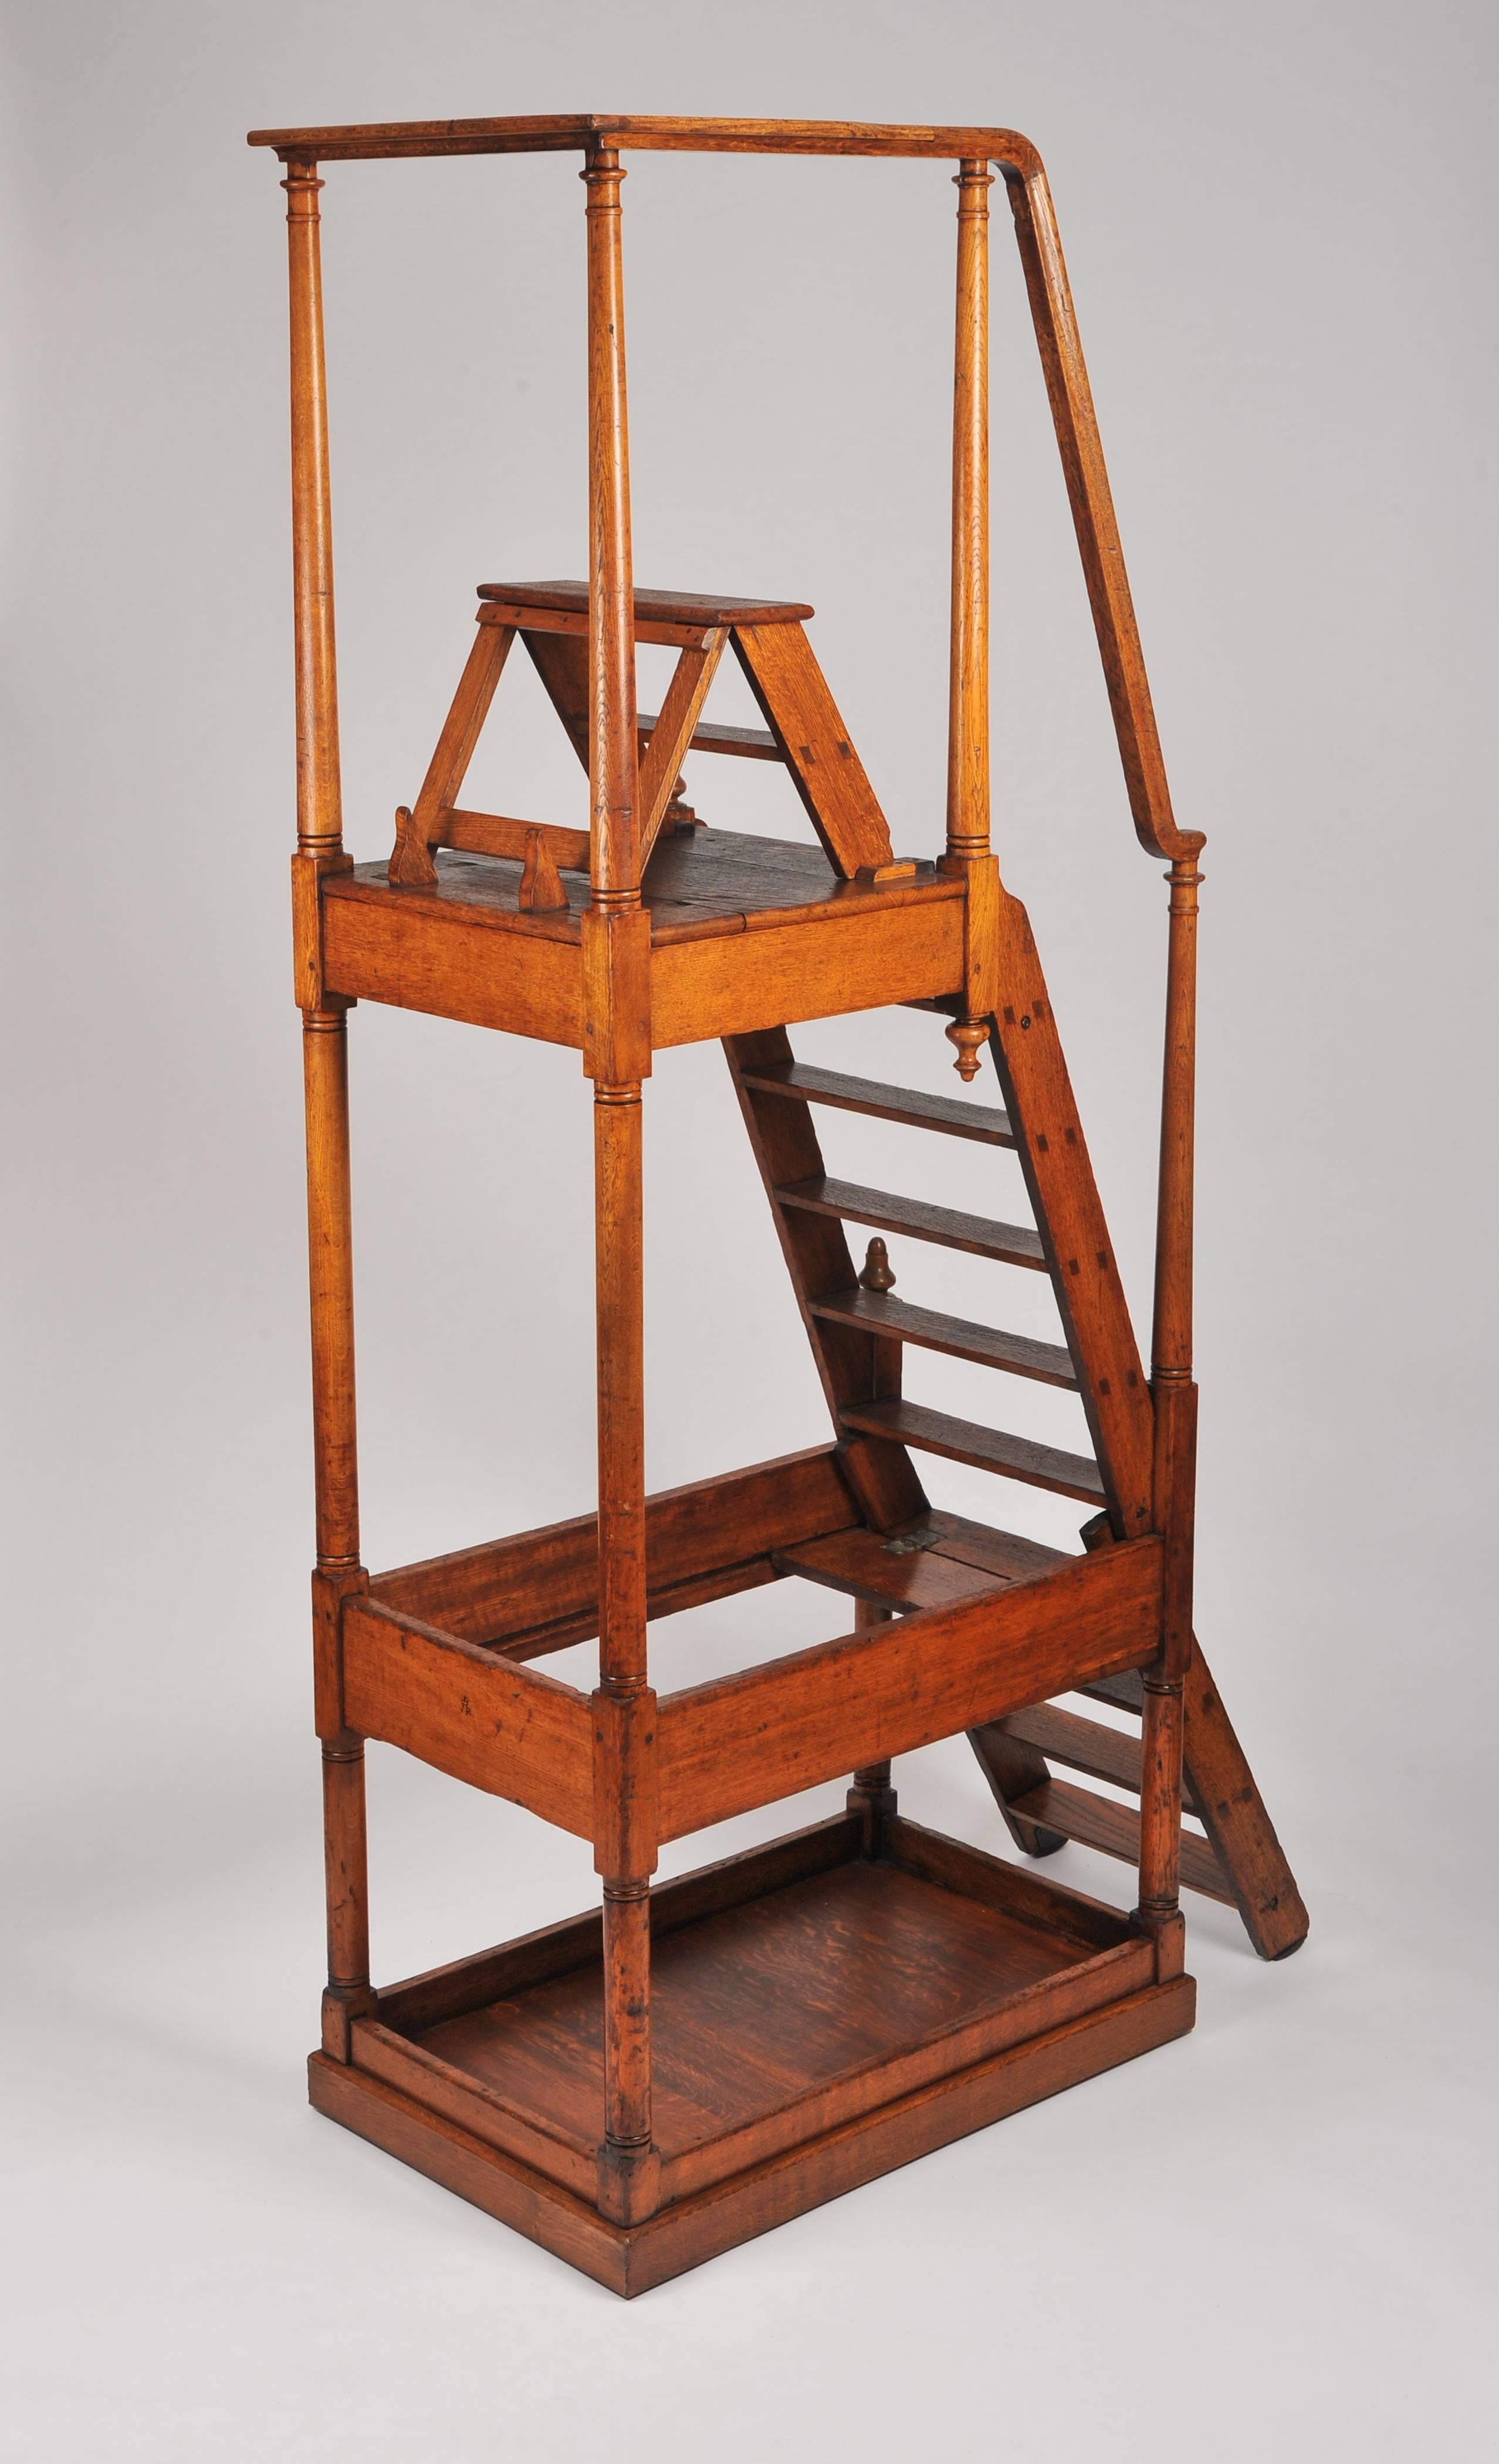 Diese prächtigen und übergroßen Bibliotheksstufen aus Eichenholz aus dem 19. Jahrhundert tragen den Stempel VR und stammen ursprünglich aus der Tate Gallery. Er misst eine Gesamthöhe von 251 cm (99 in), eine Tiefe von 62,5 cm (24 ½ in) und eine